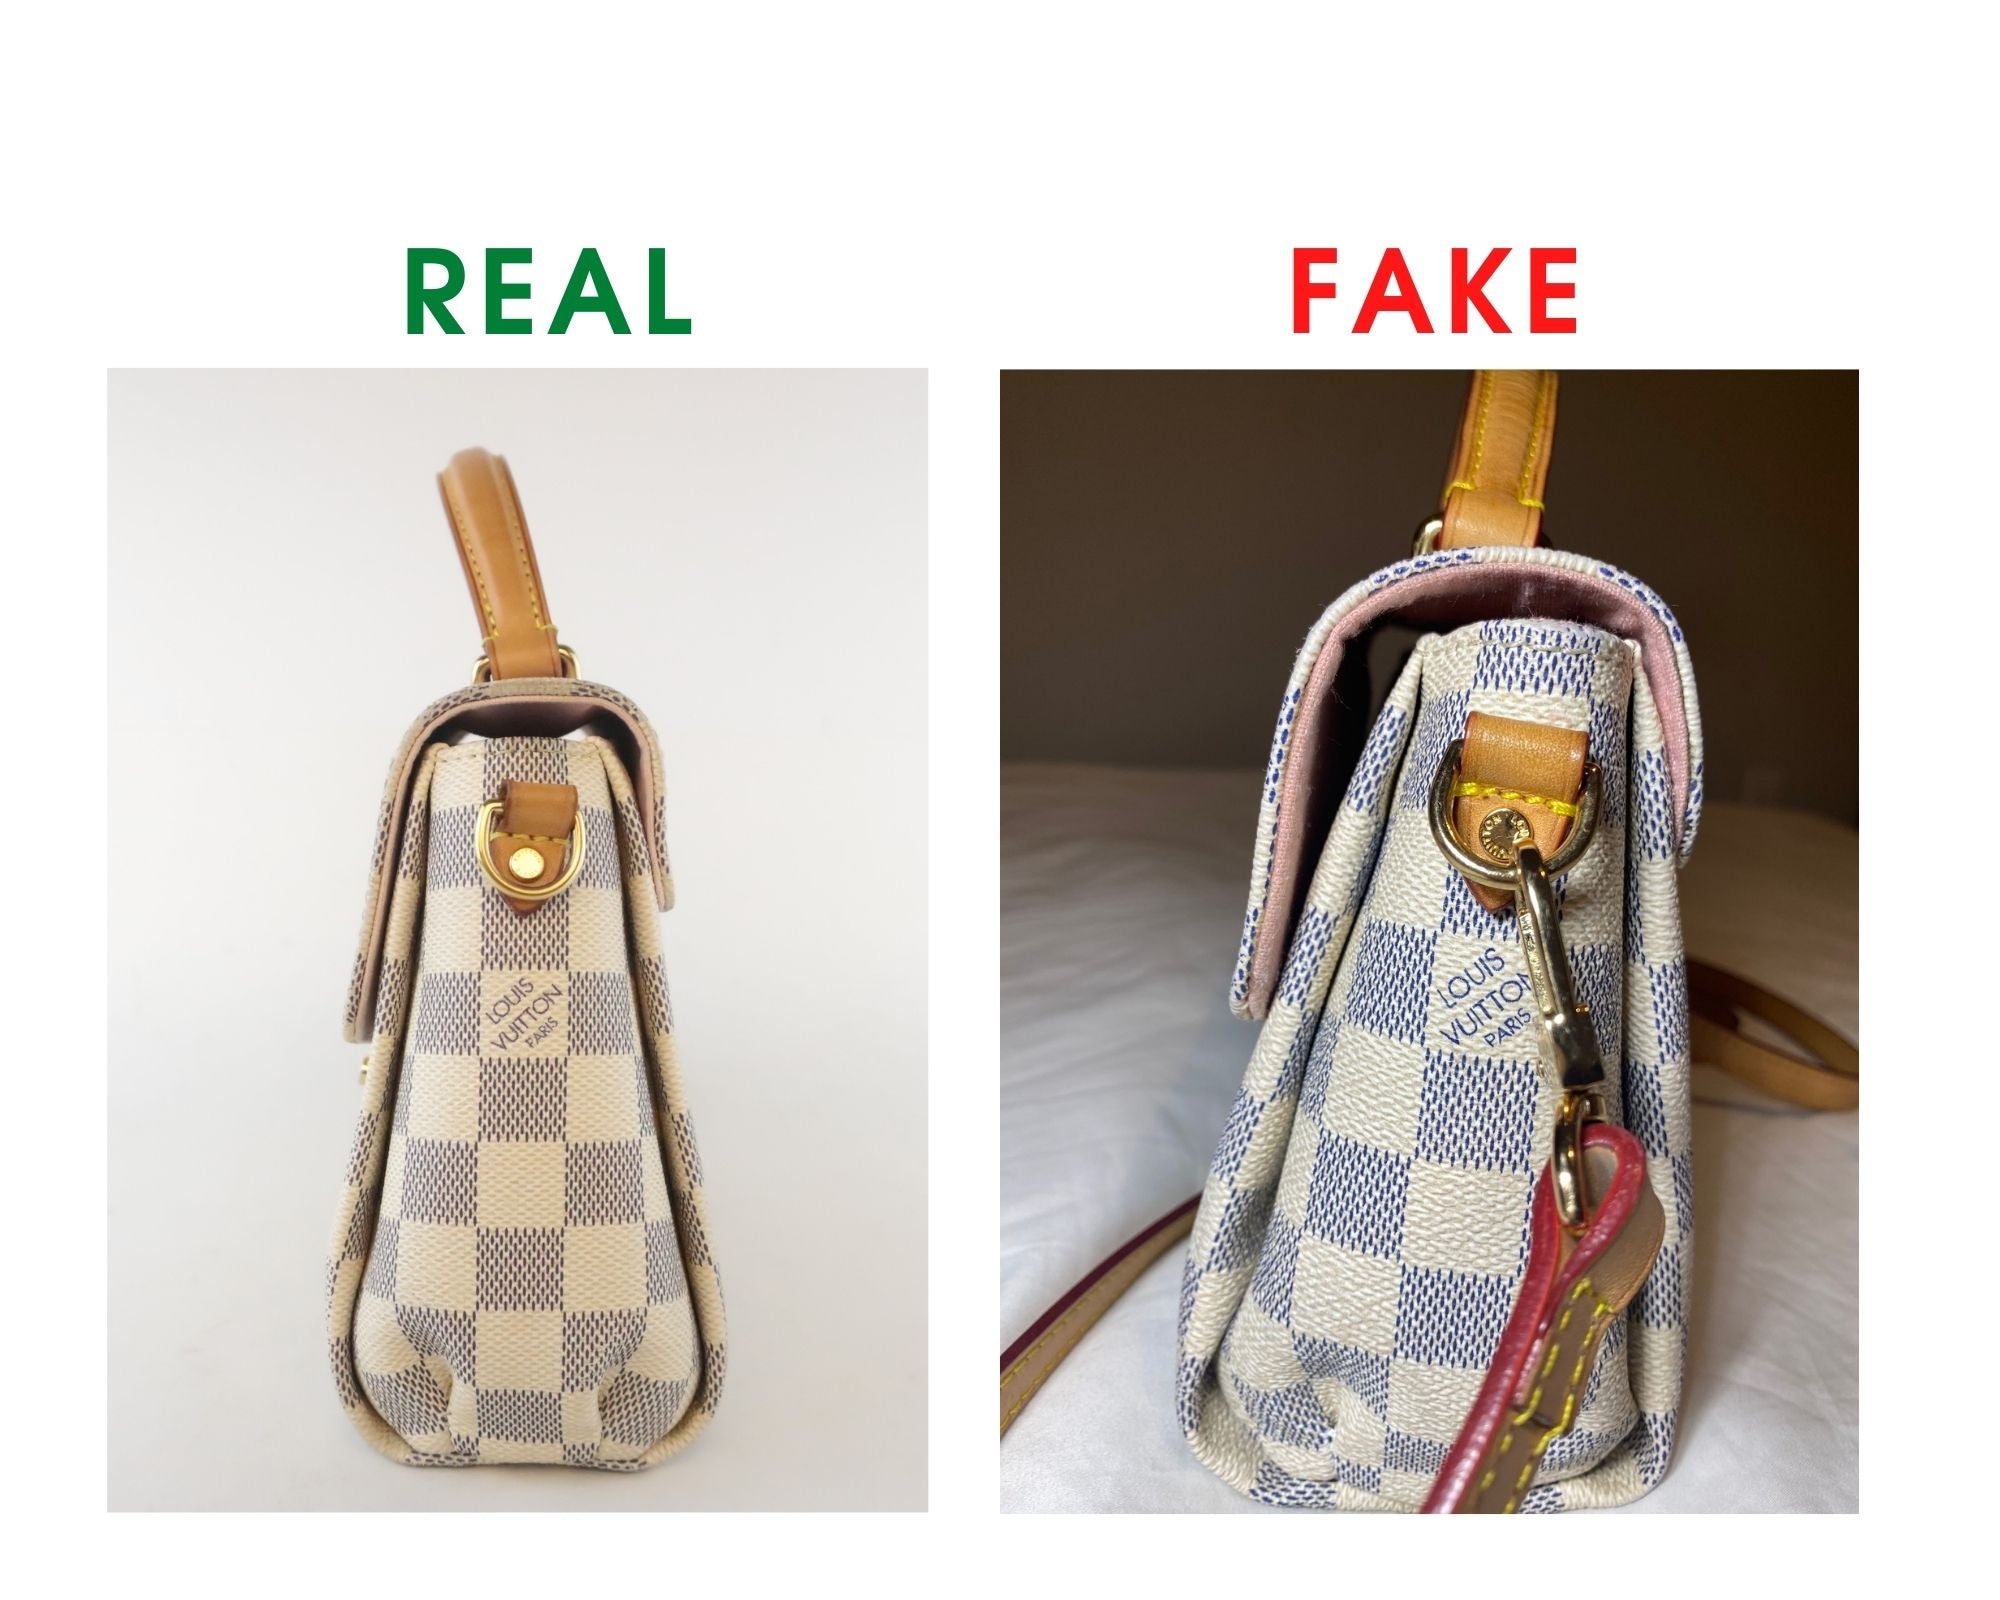 Revisión de bolsas de Louis Vuitton Croisette y Comparación Real Vs Fake (con fotos reales) Hebilla de cuero